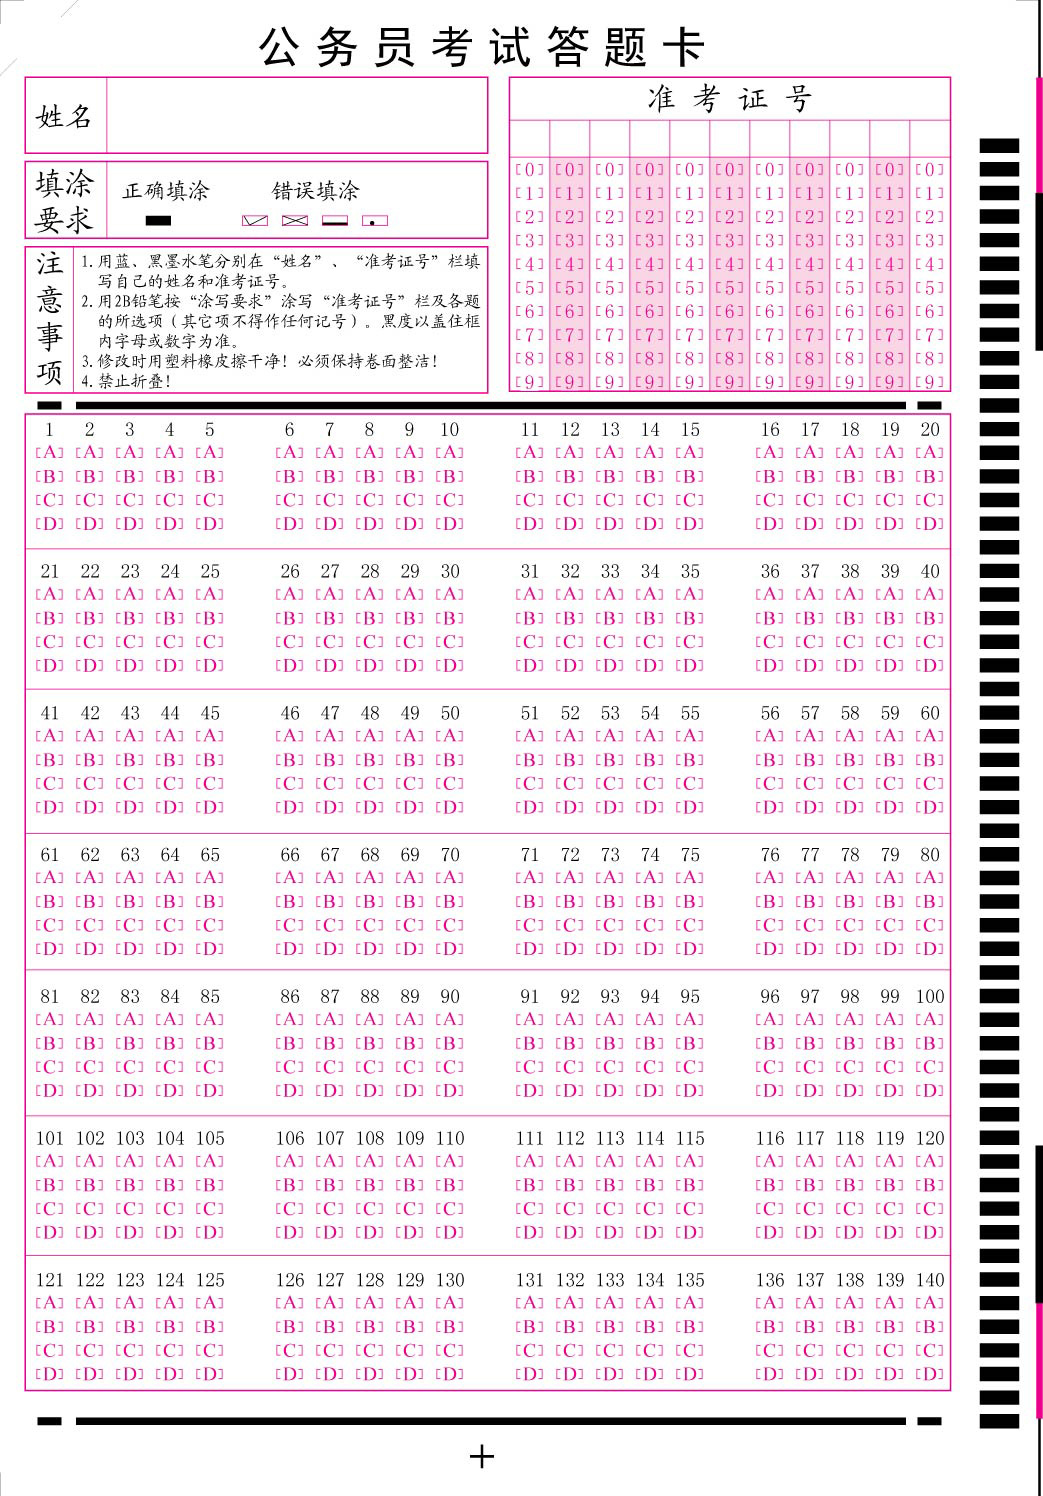 北京公司公务员考试答题卡.jpg